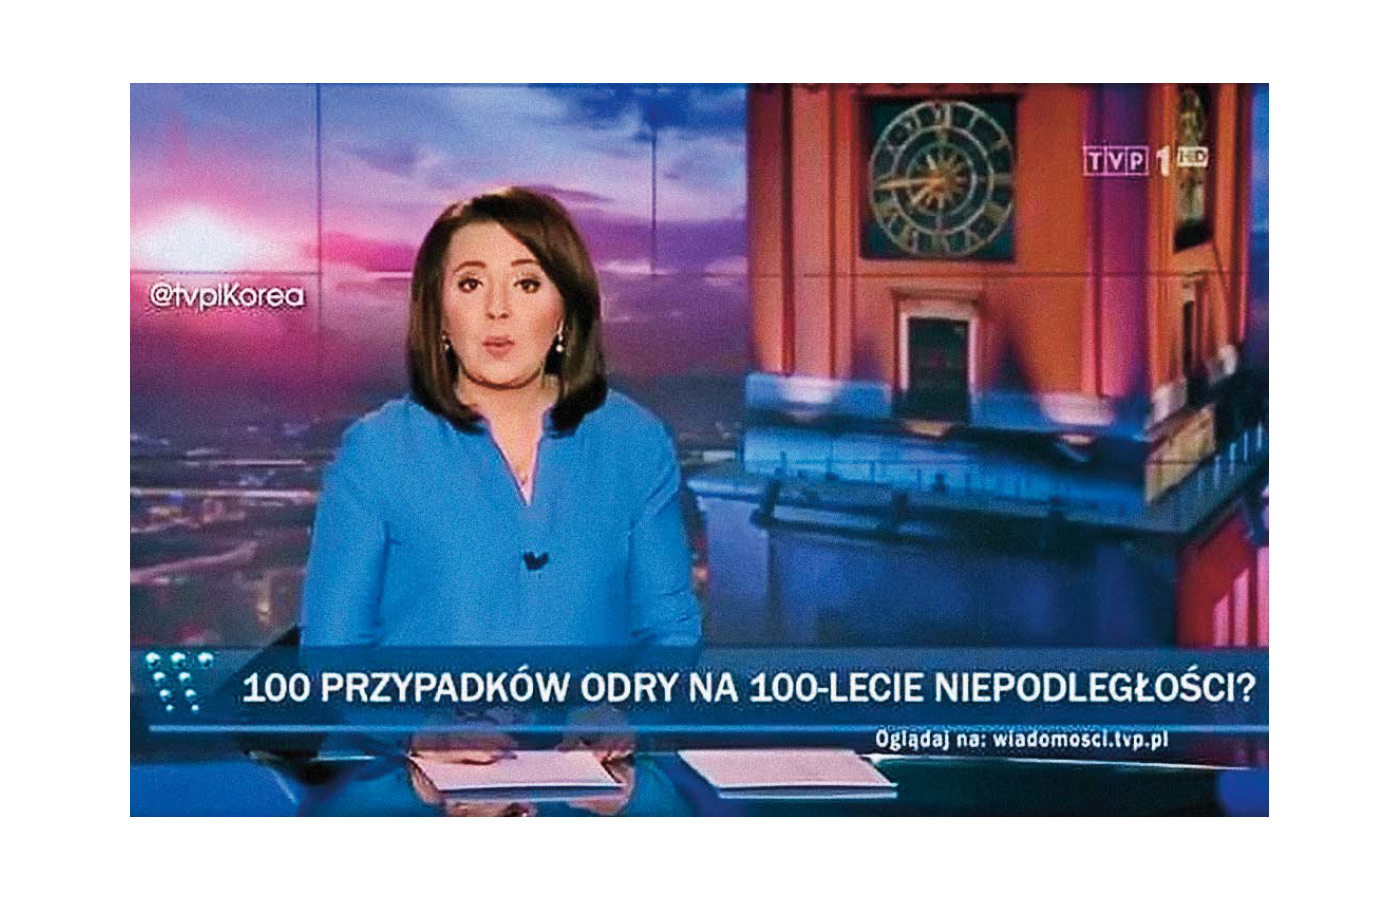 Onet pl wiadomosci. Ведущие TVP info. TVP info Польша. Tvp1. TVP World News.